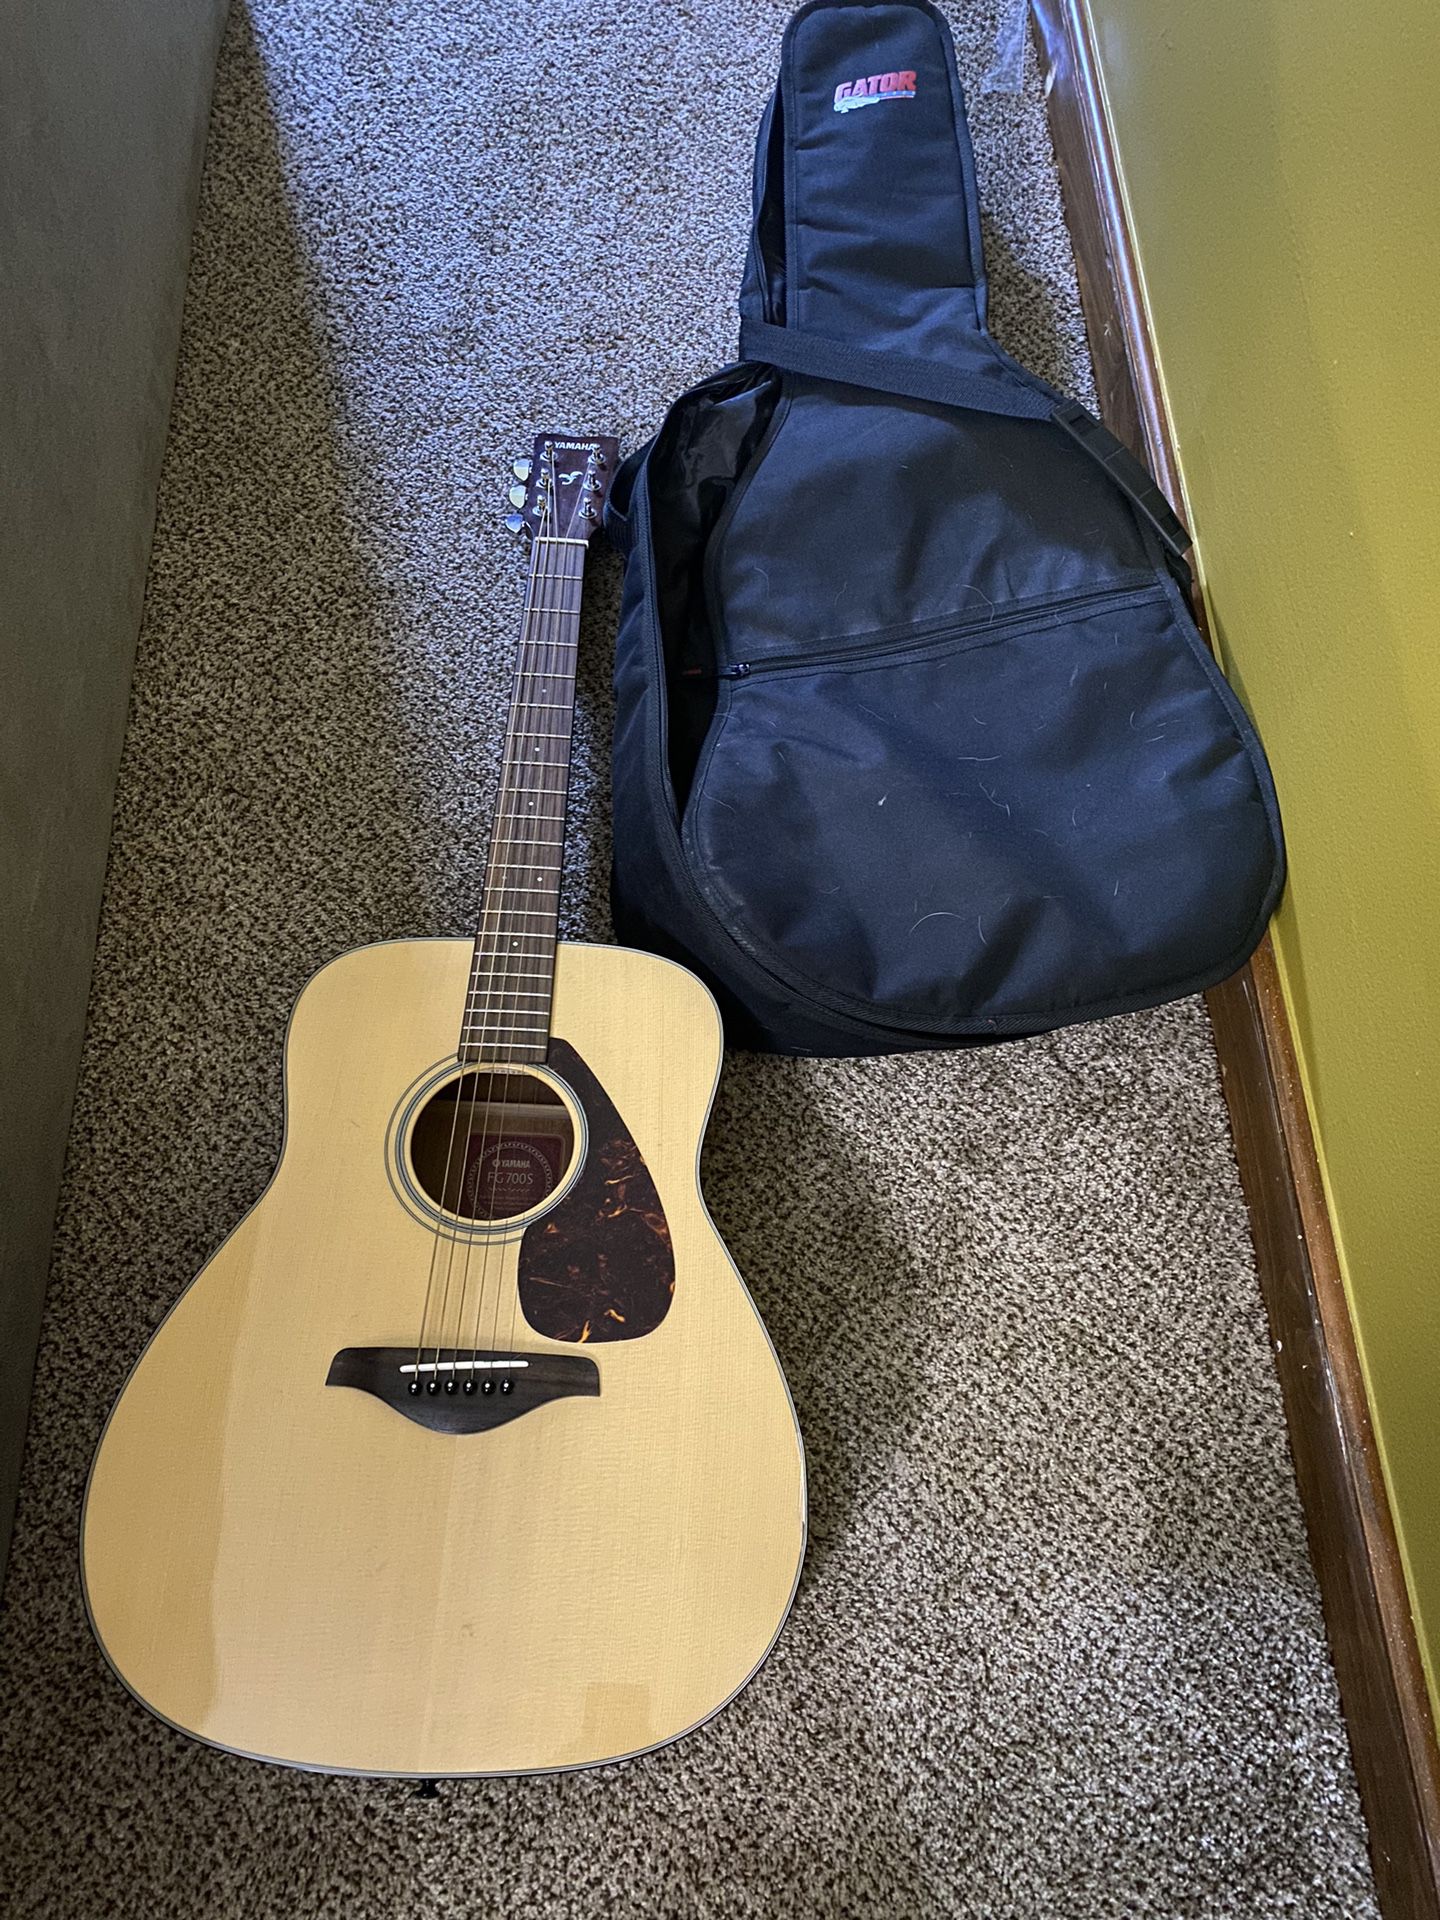 Yamaha Guitar  And Case 